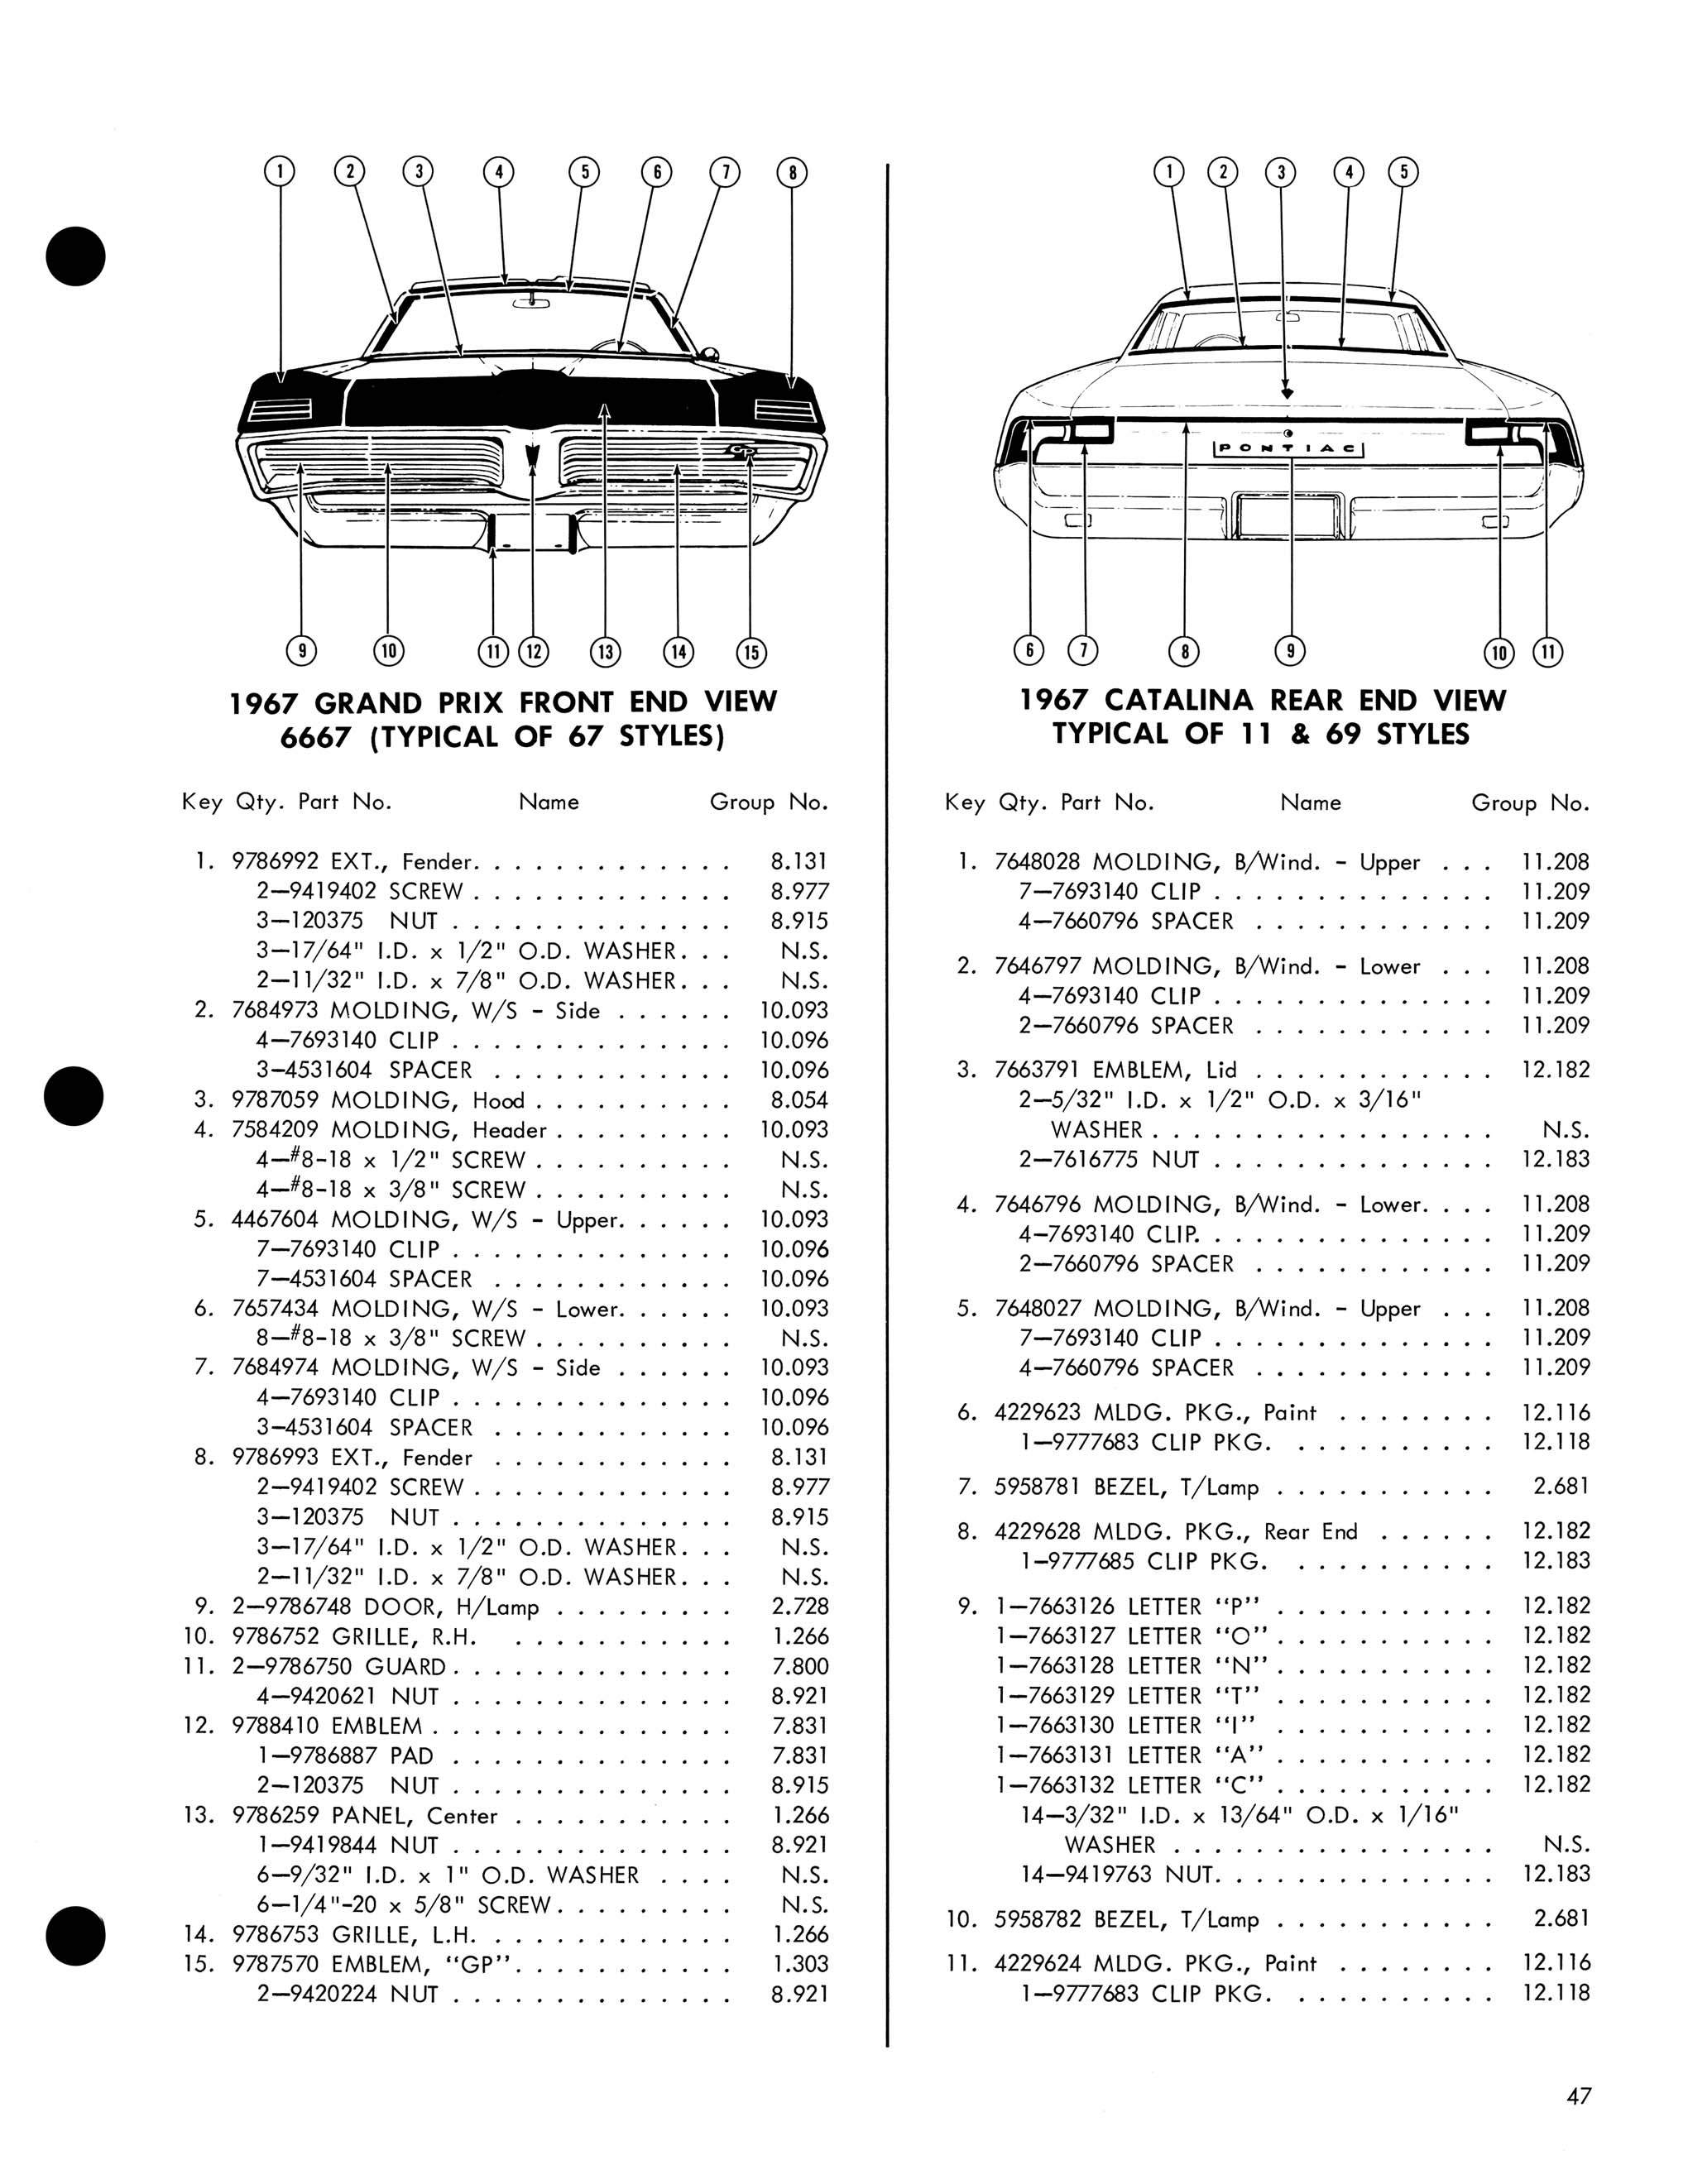 1967 Pontiac Molding and Clip Catalog-47